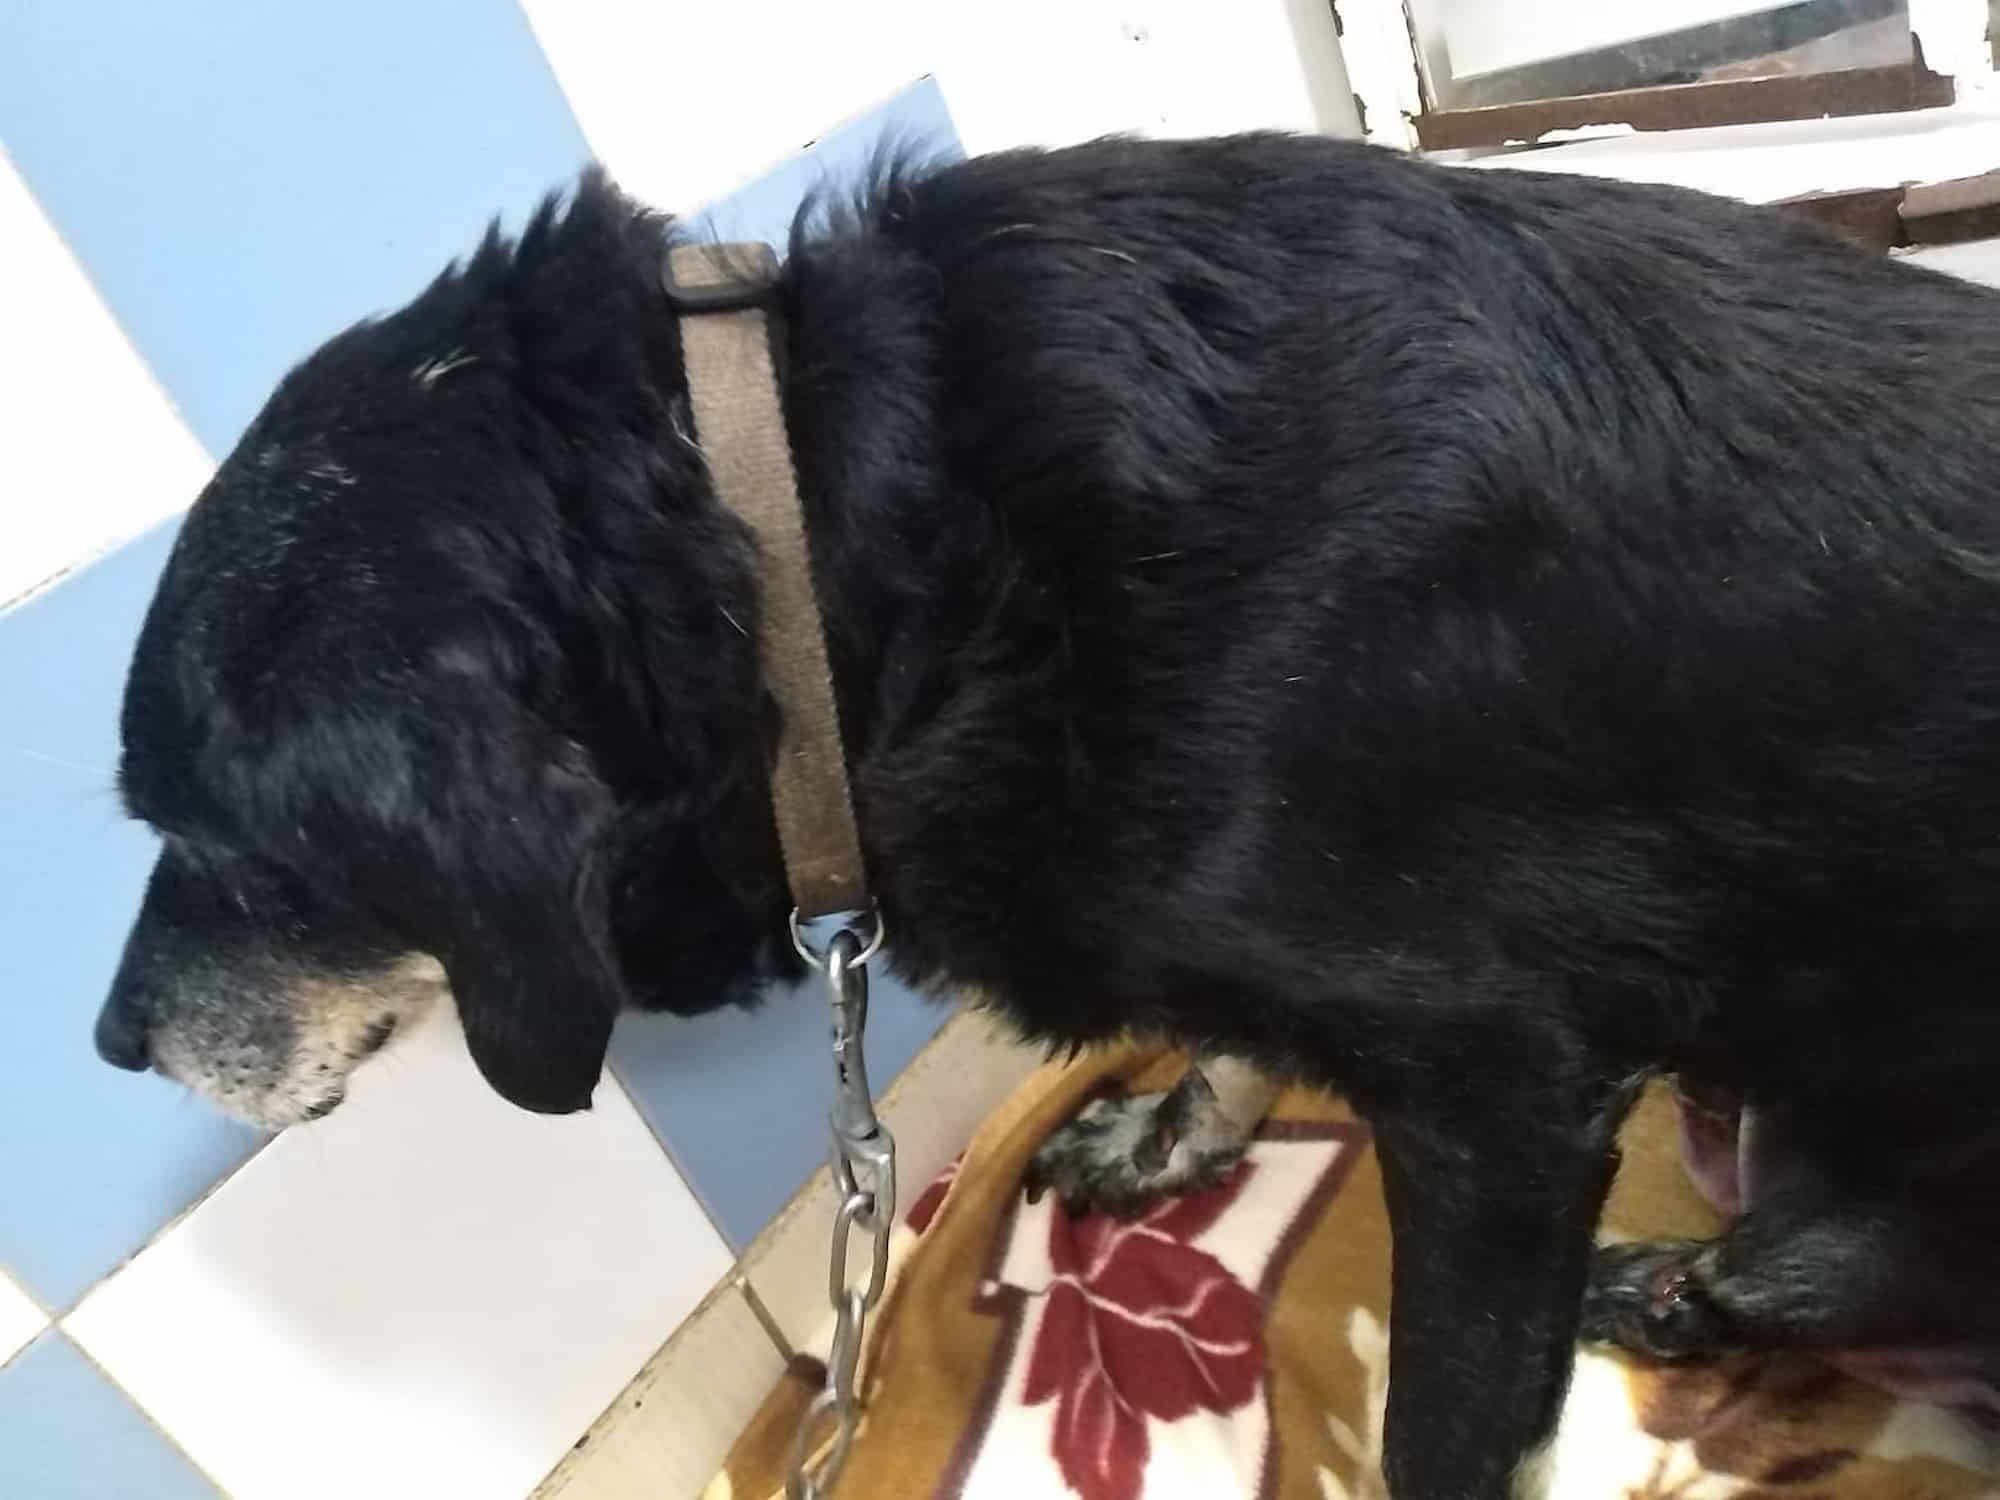 Αδιανόητο σκηνικό στα Χανιά: Άνδρας έσερνε με το αυτοκίνητο το γέρικο σκυλί του - Το είχε δέσει στον προφυλακτήρα (εικόνα)